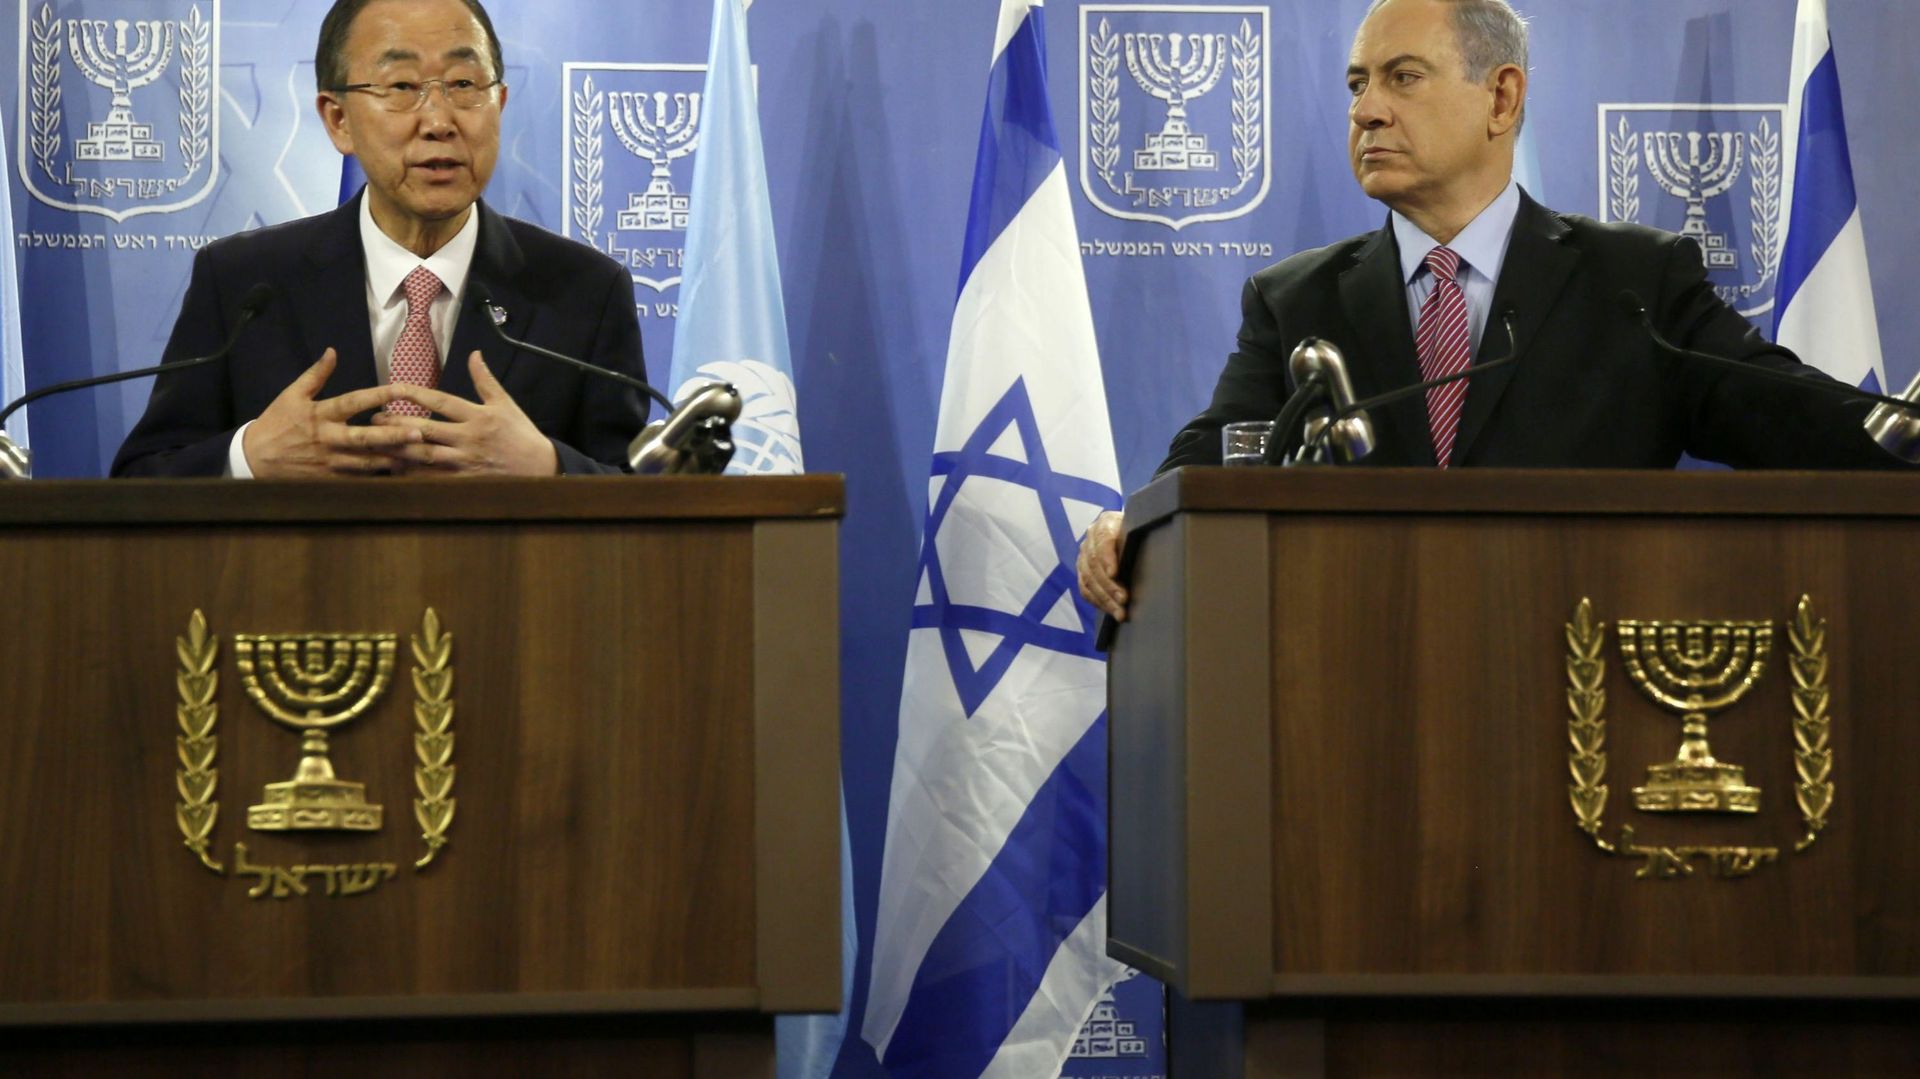 Le secrétaire général de l'ONU Ban Ki-Moon en conférence de presse avec le Premier ministre israélien Benjamin Netanyahu, à Tel Aviv, au sujet du conflit sanglant dans la Bande de Gaza